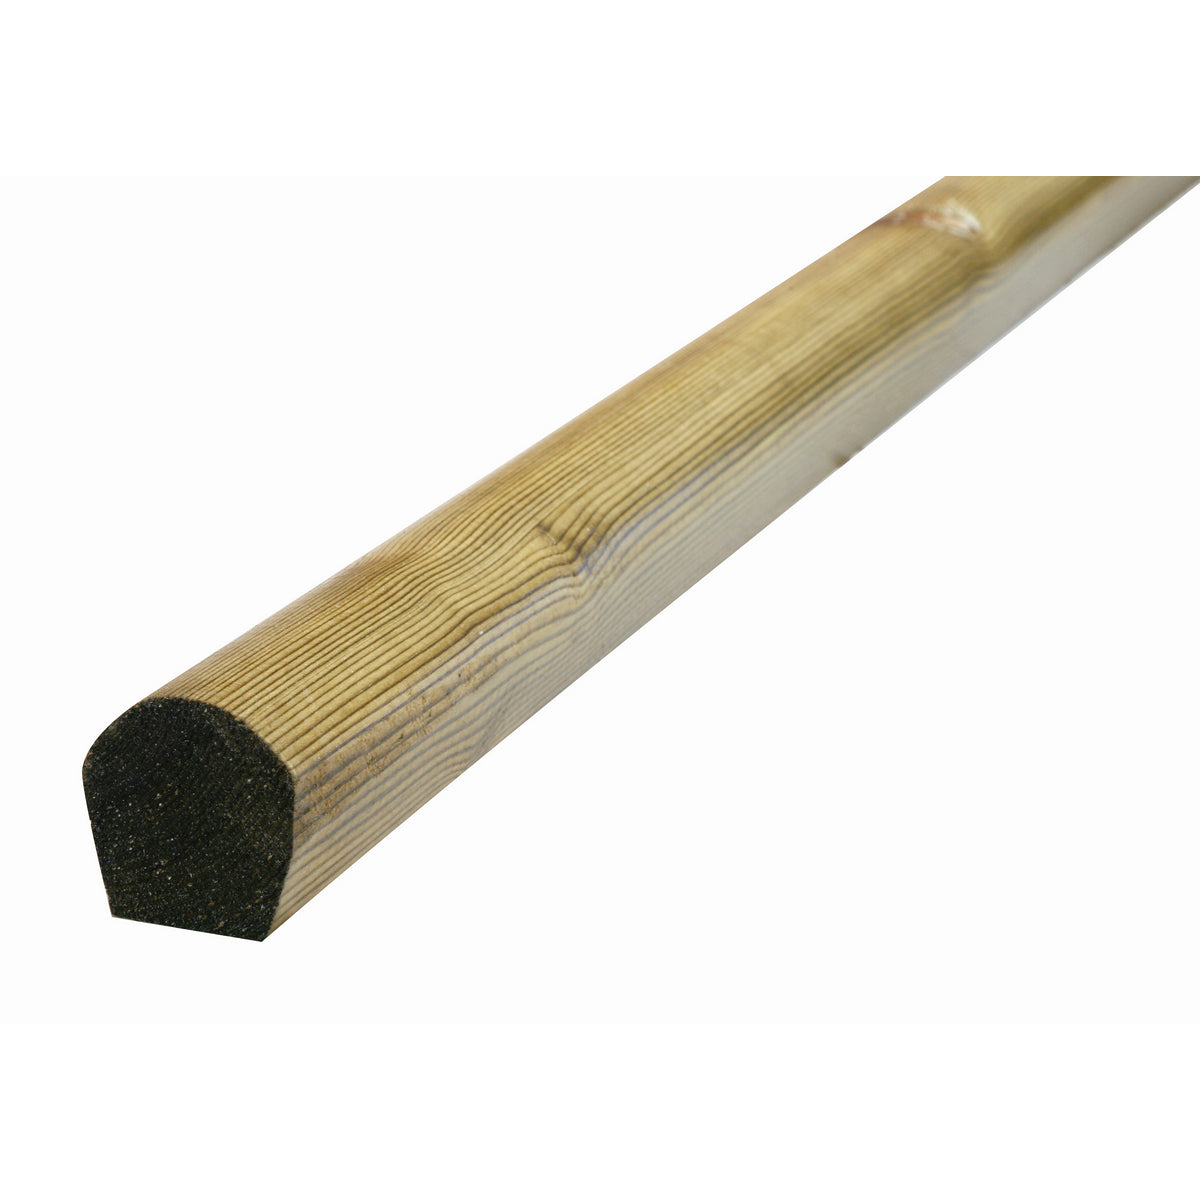 2.4M 50mm x 50mm Treated Mopstick (lead roll)